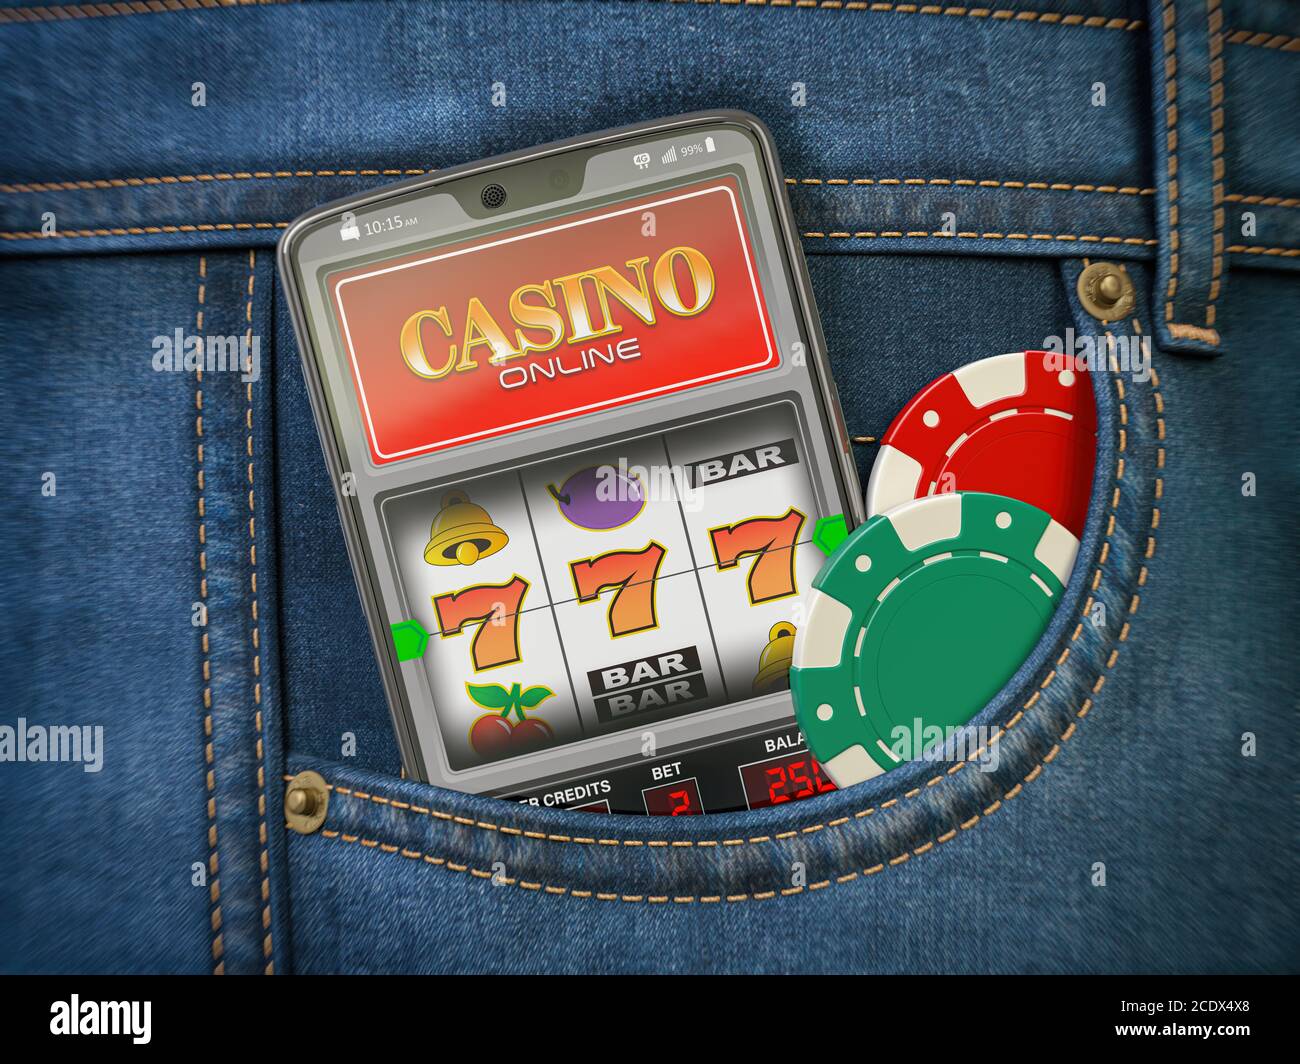 Casino en línea. Teléfono móvil o smartphone con sota máquina Jackpot en la pantalla en el bolsillo de jeans. ilustración 3d Foto de stock